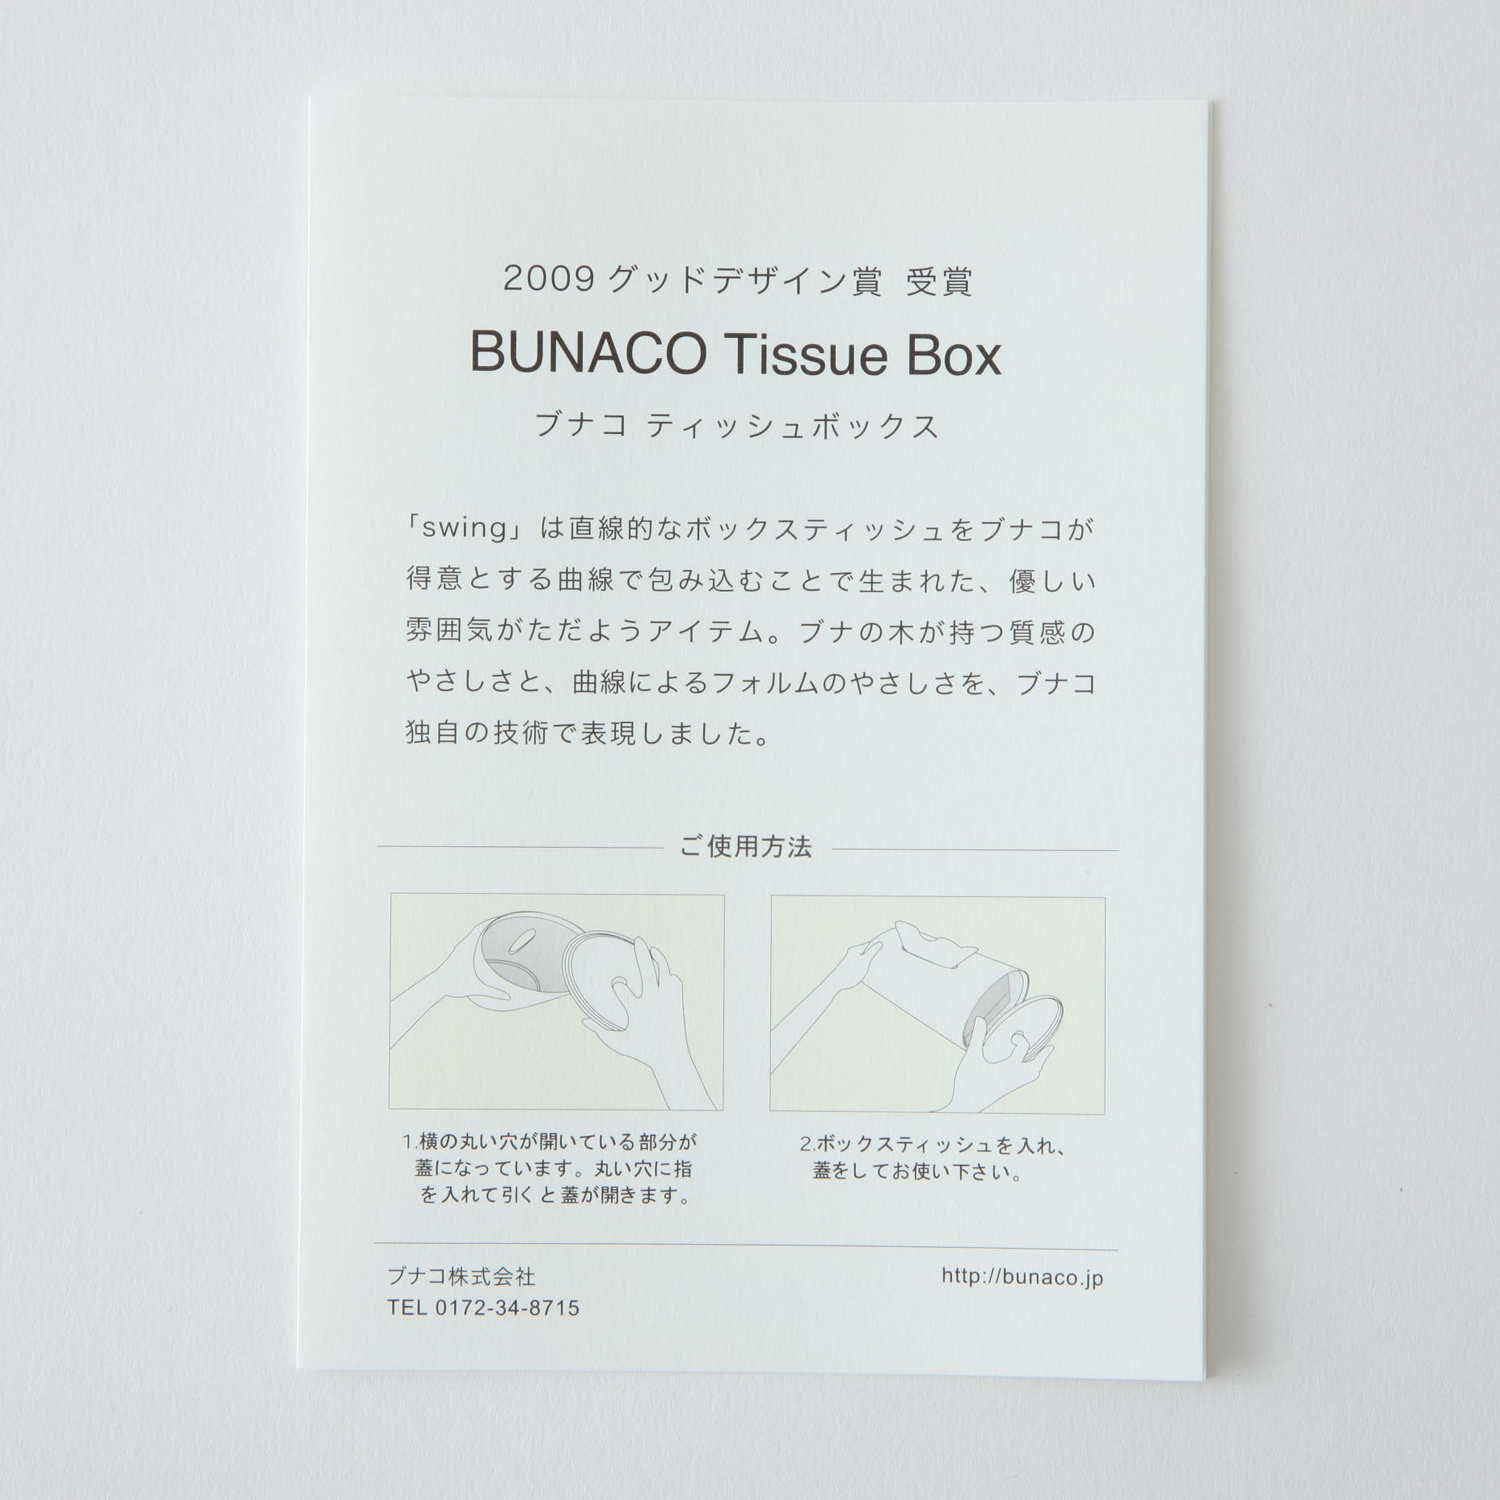 BUNACO/ティッシュボックス SWING for box